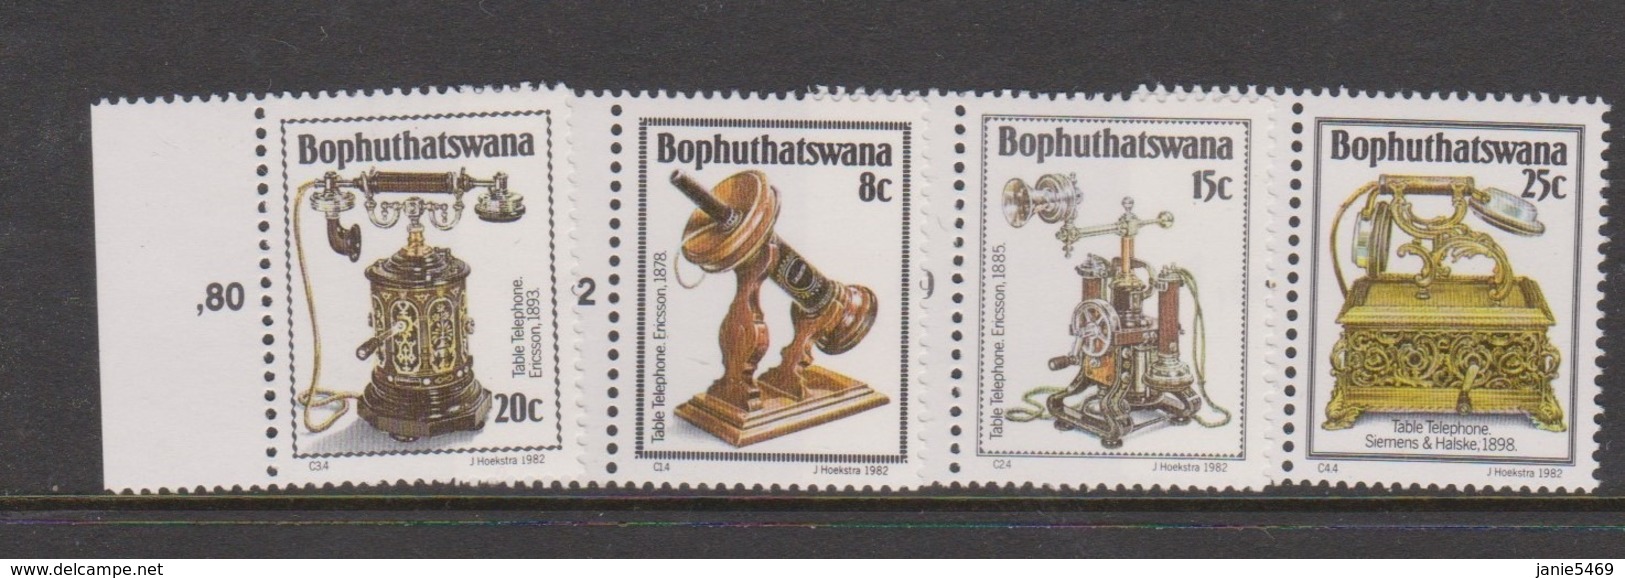 South Africa-Bophuthatswana SG 92-95 1982 History Of Telephone,Mint Never Hinged - Bophuthatswana